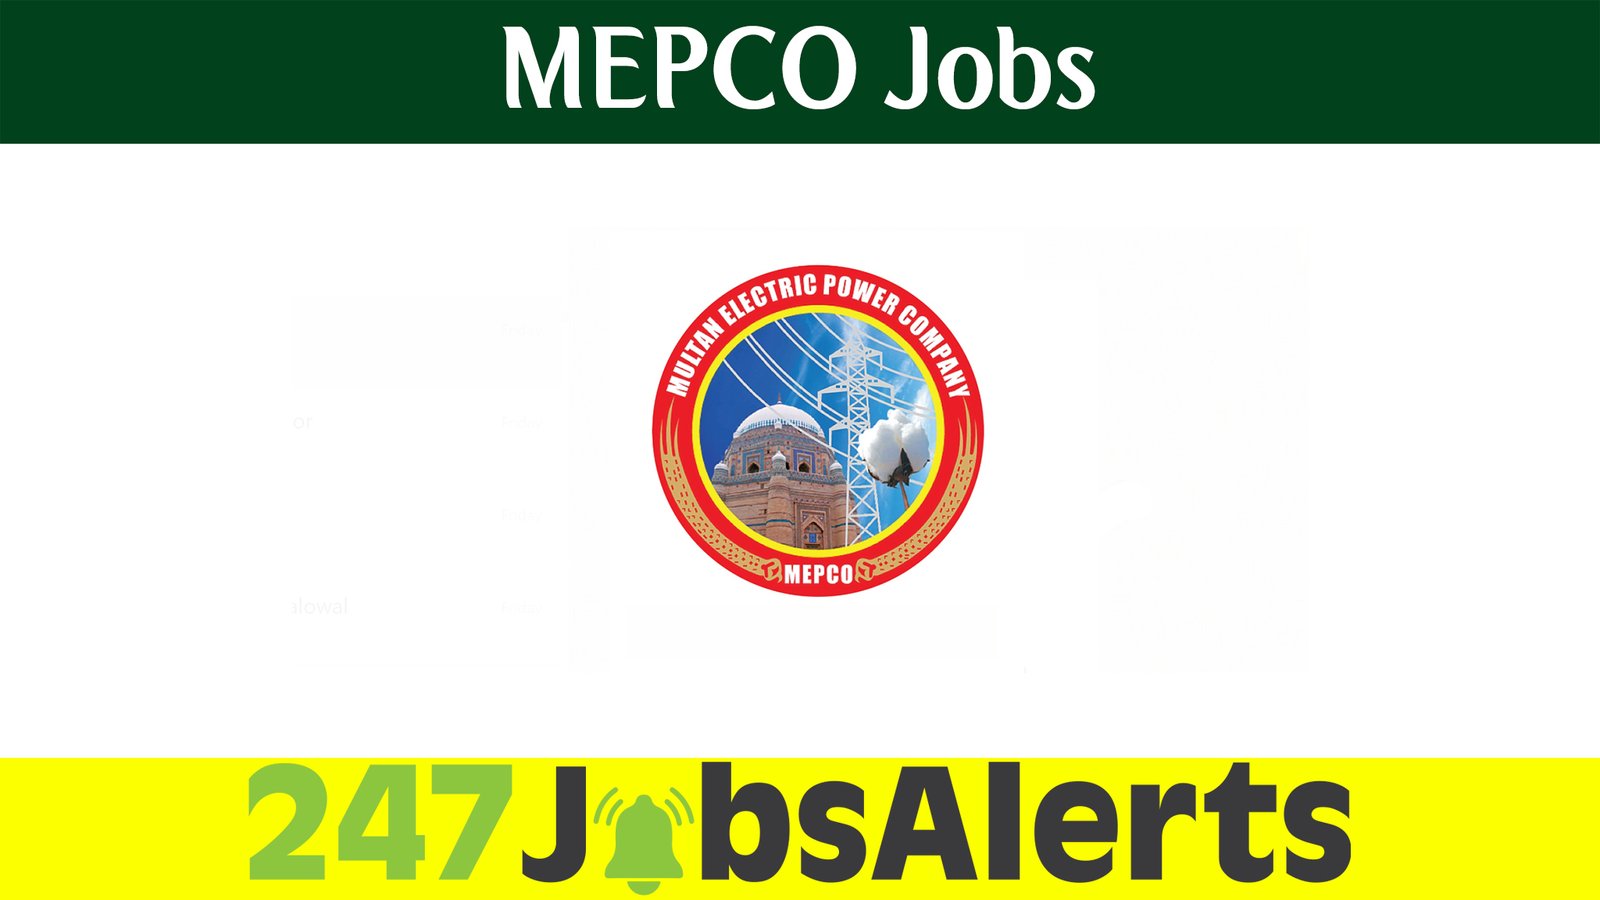 MEPCO Jobs